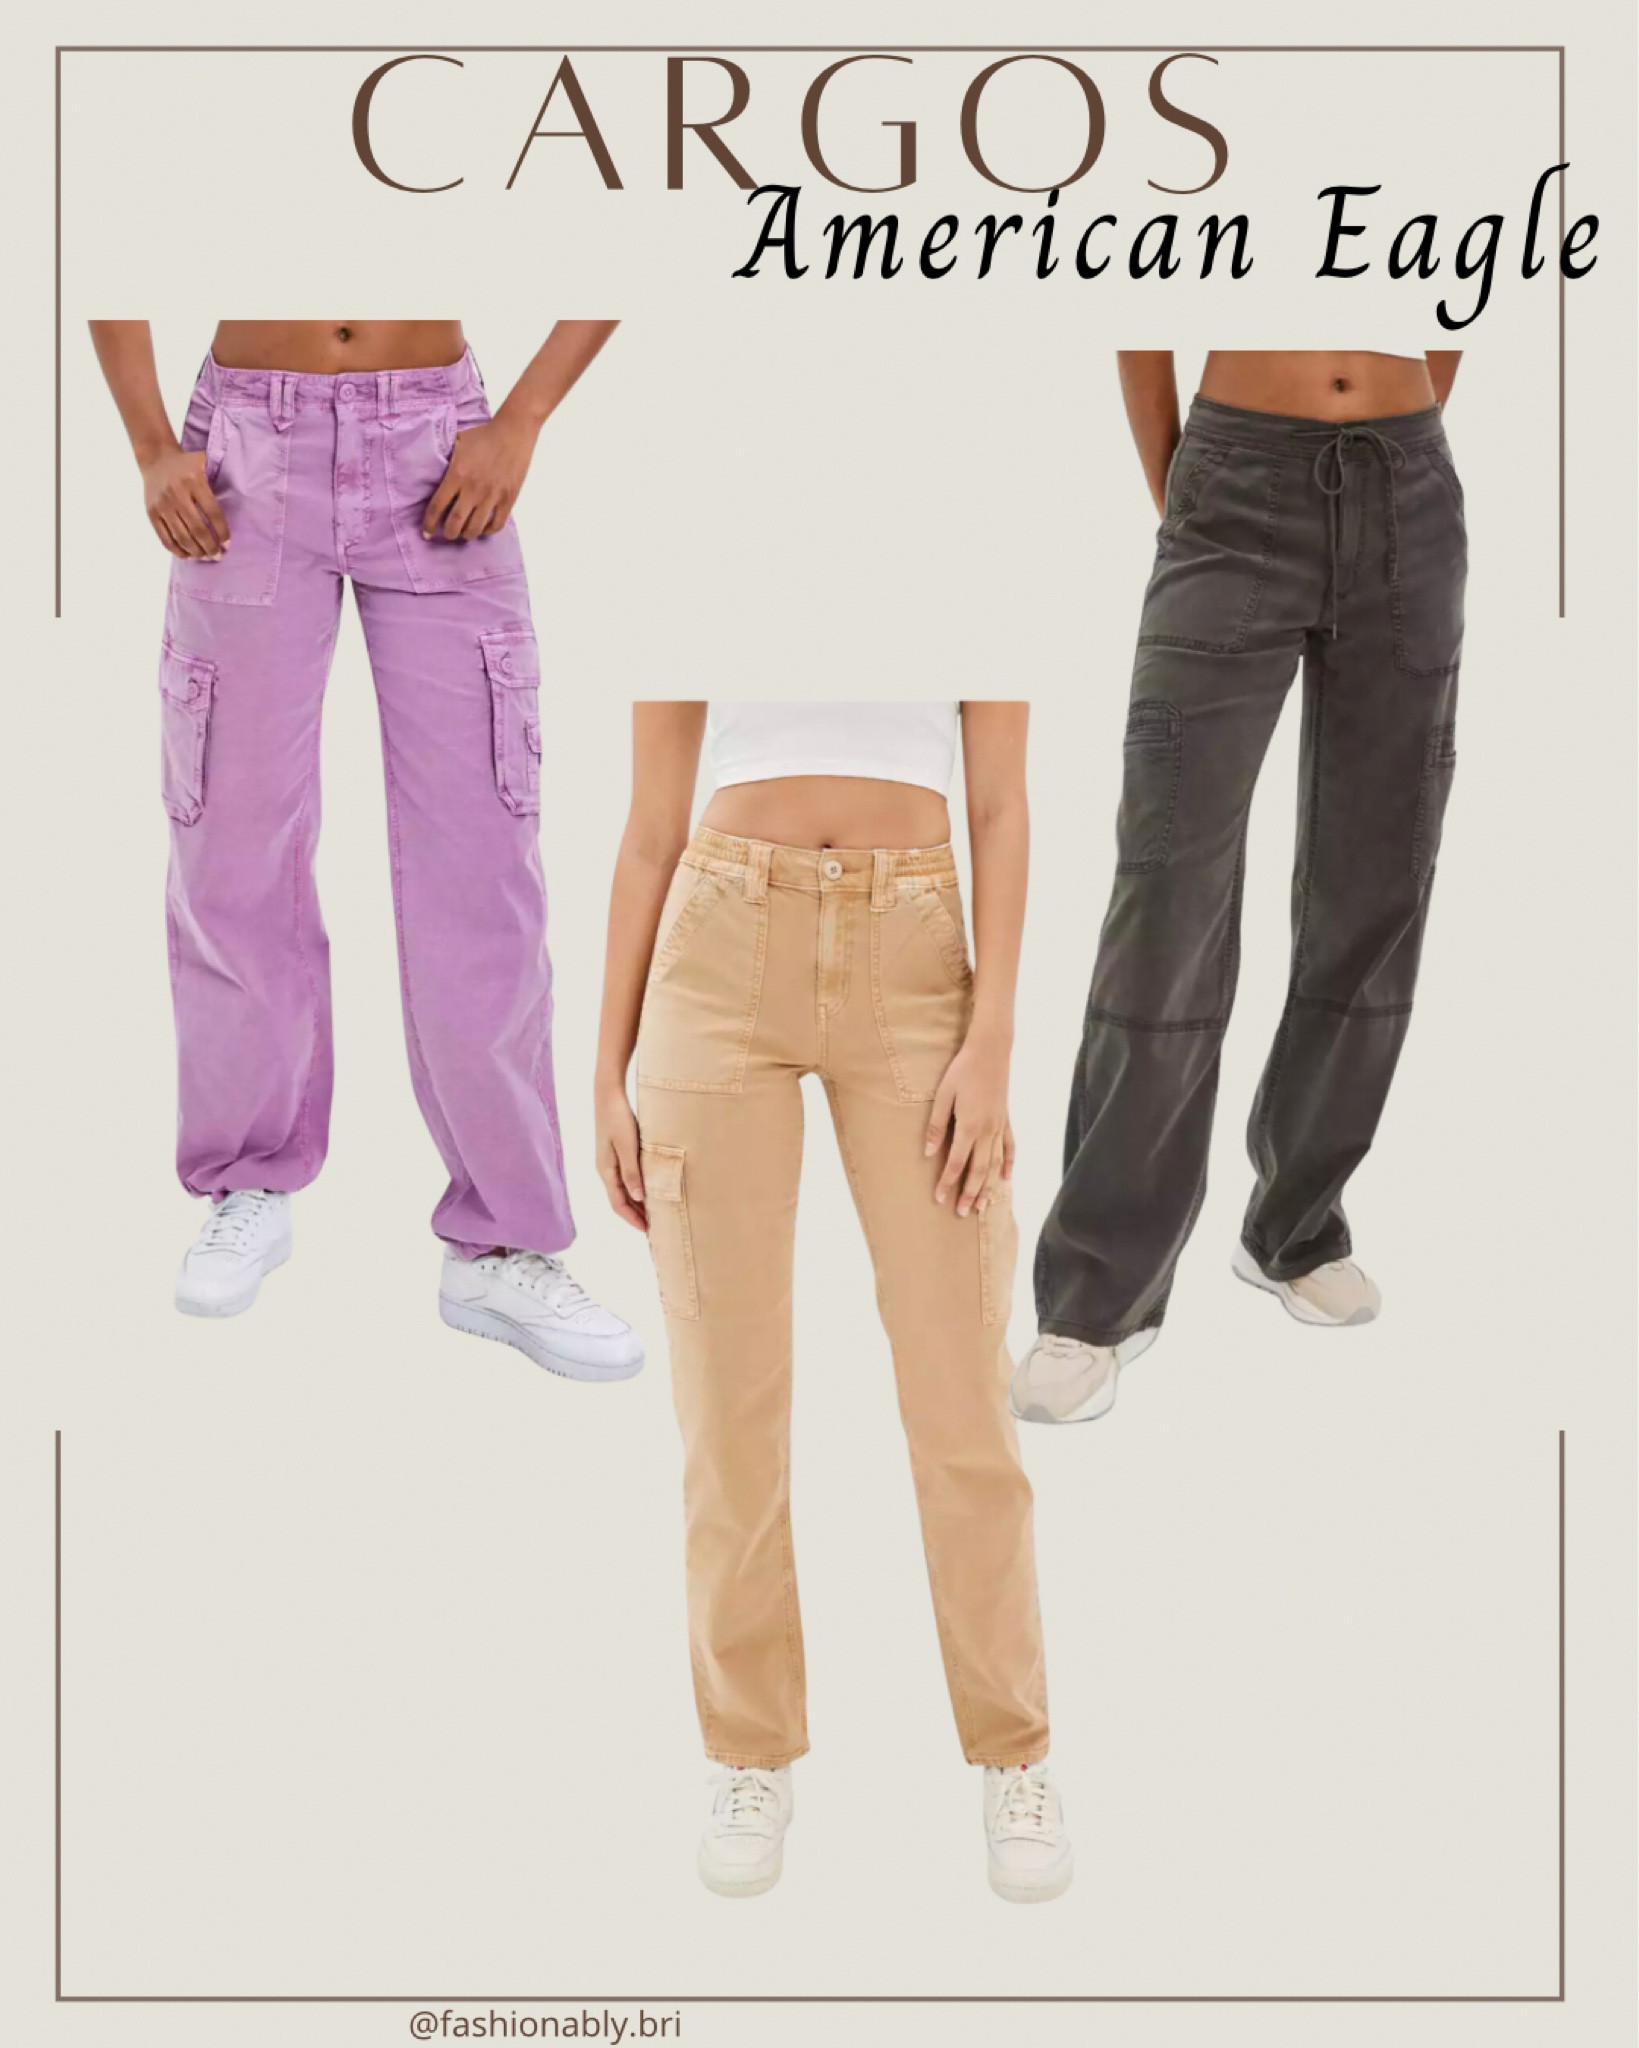 american eagle cargo pants